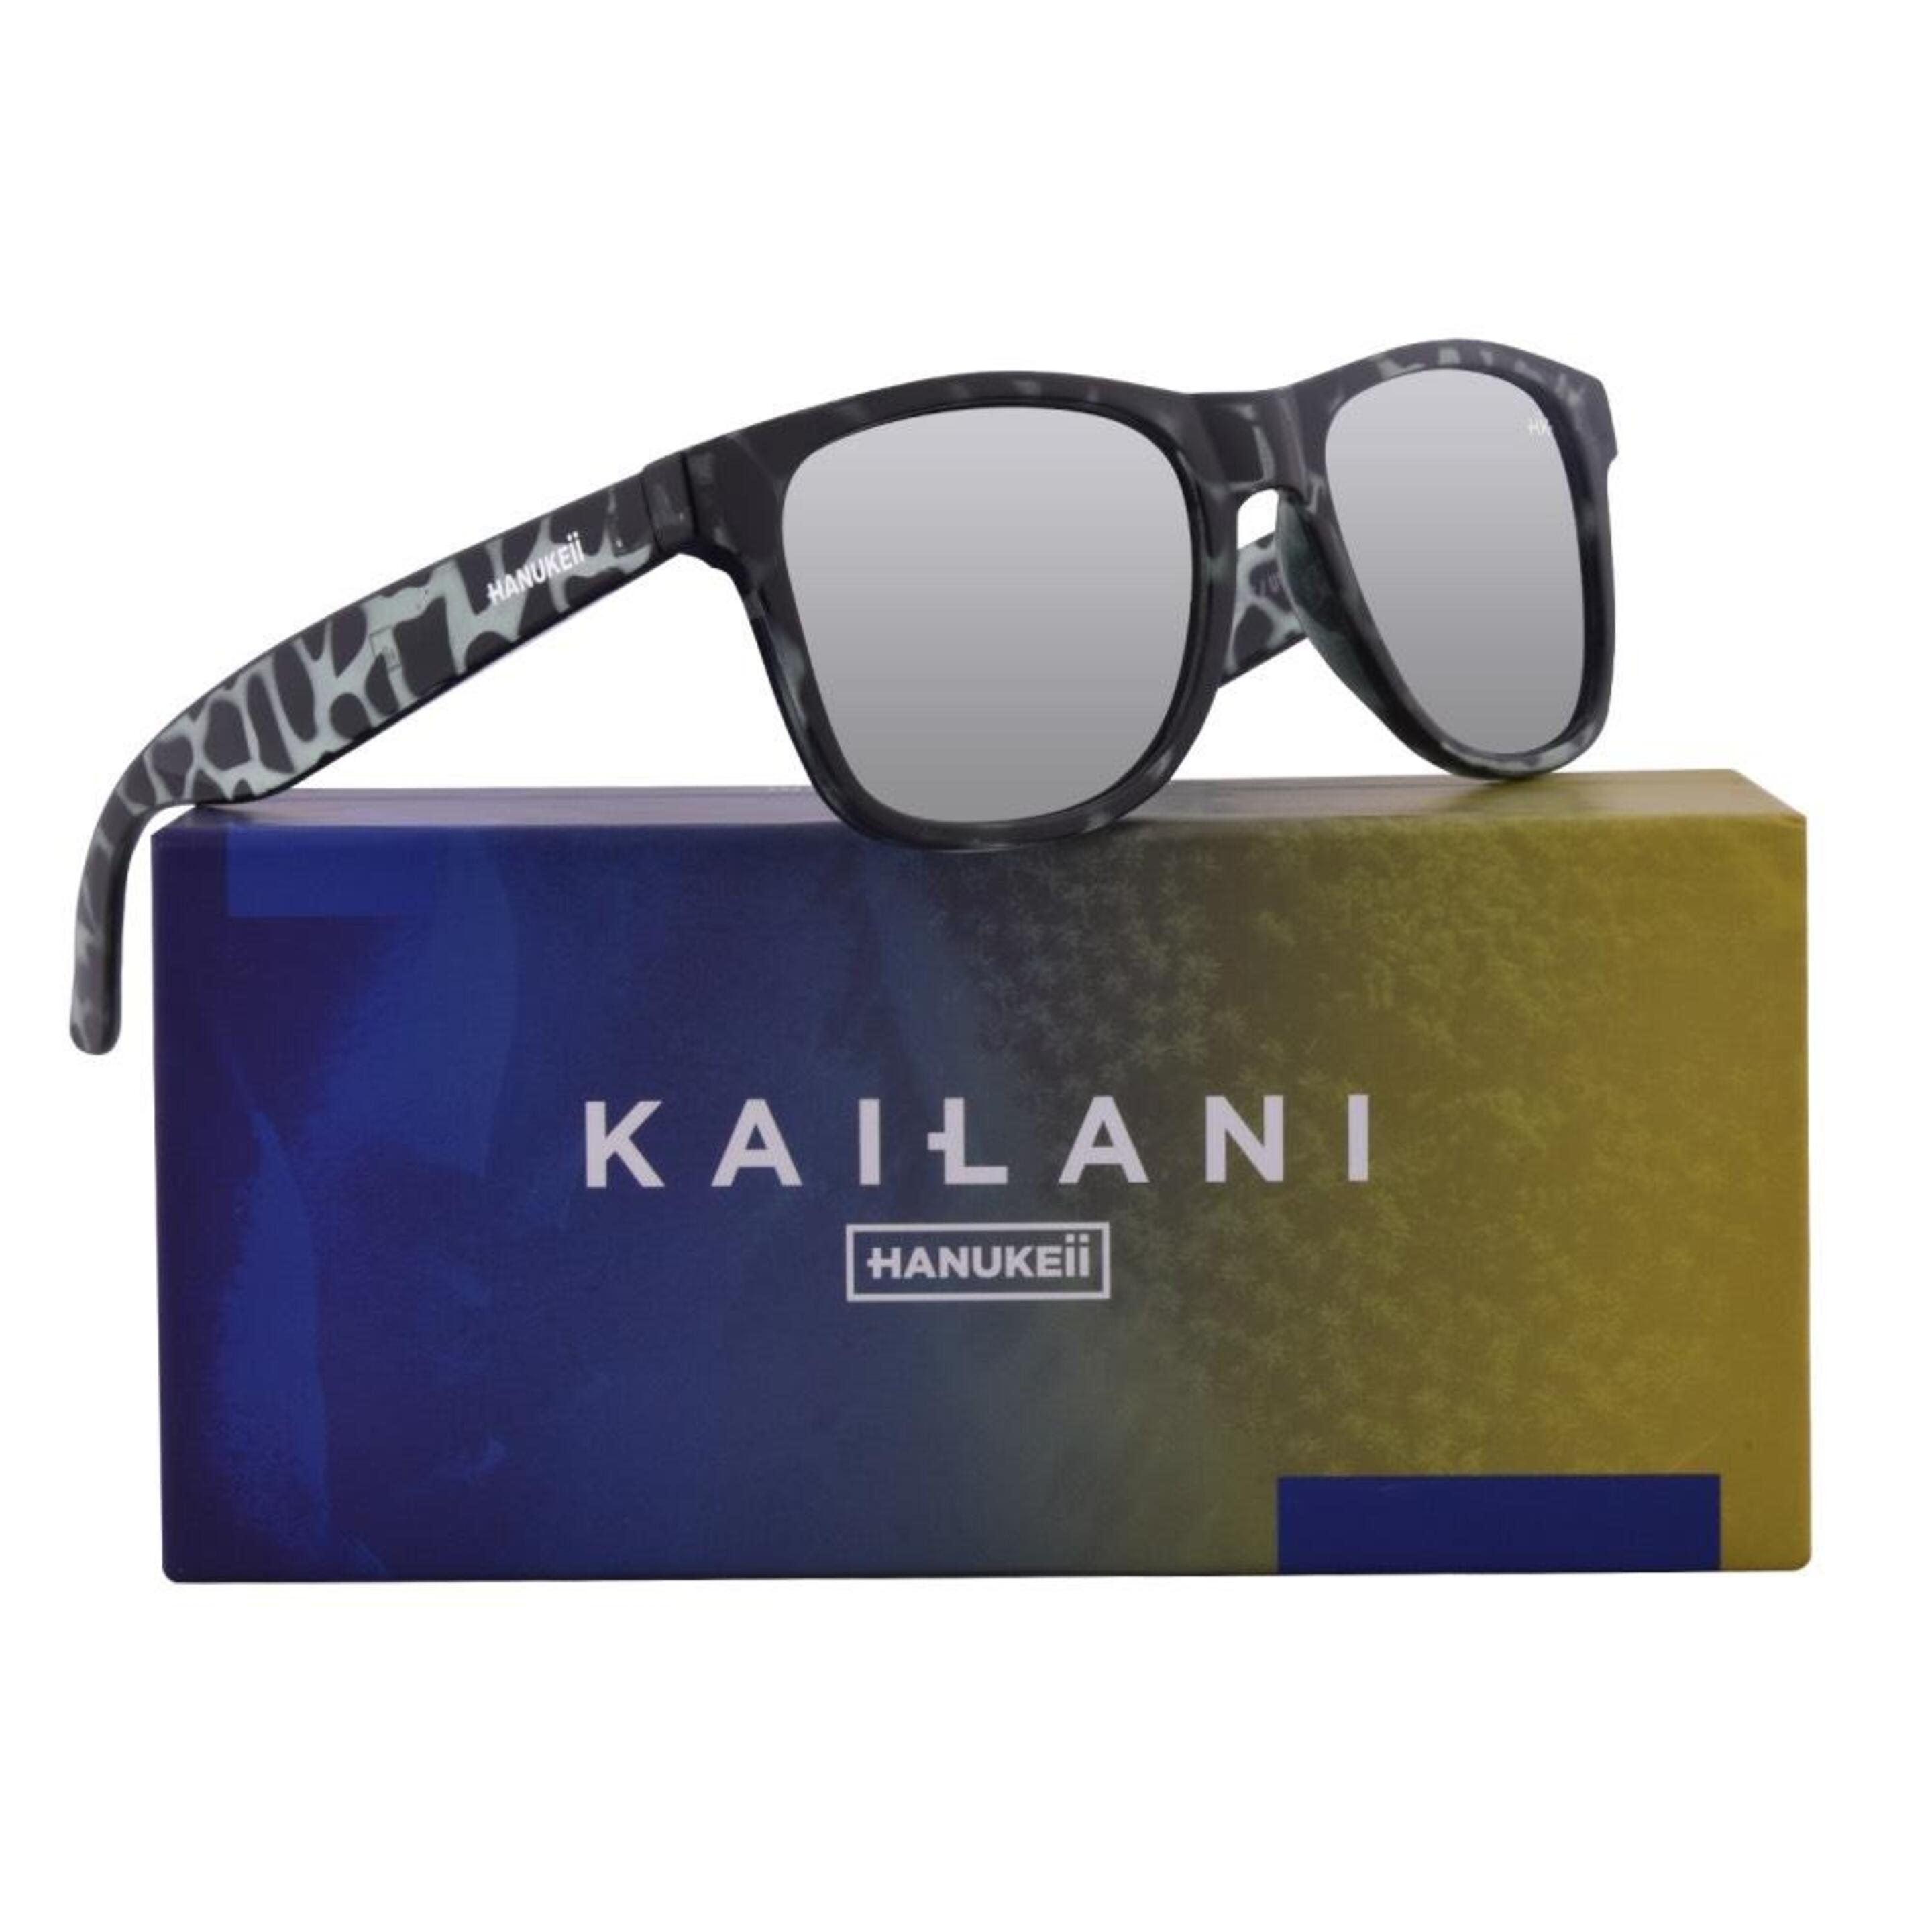 Hanukeii Gafas De Sol Hombre Y Mujer Polarizadas Kailani